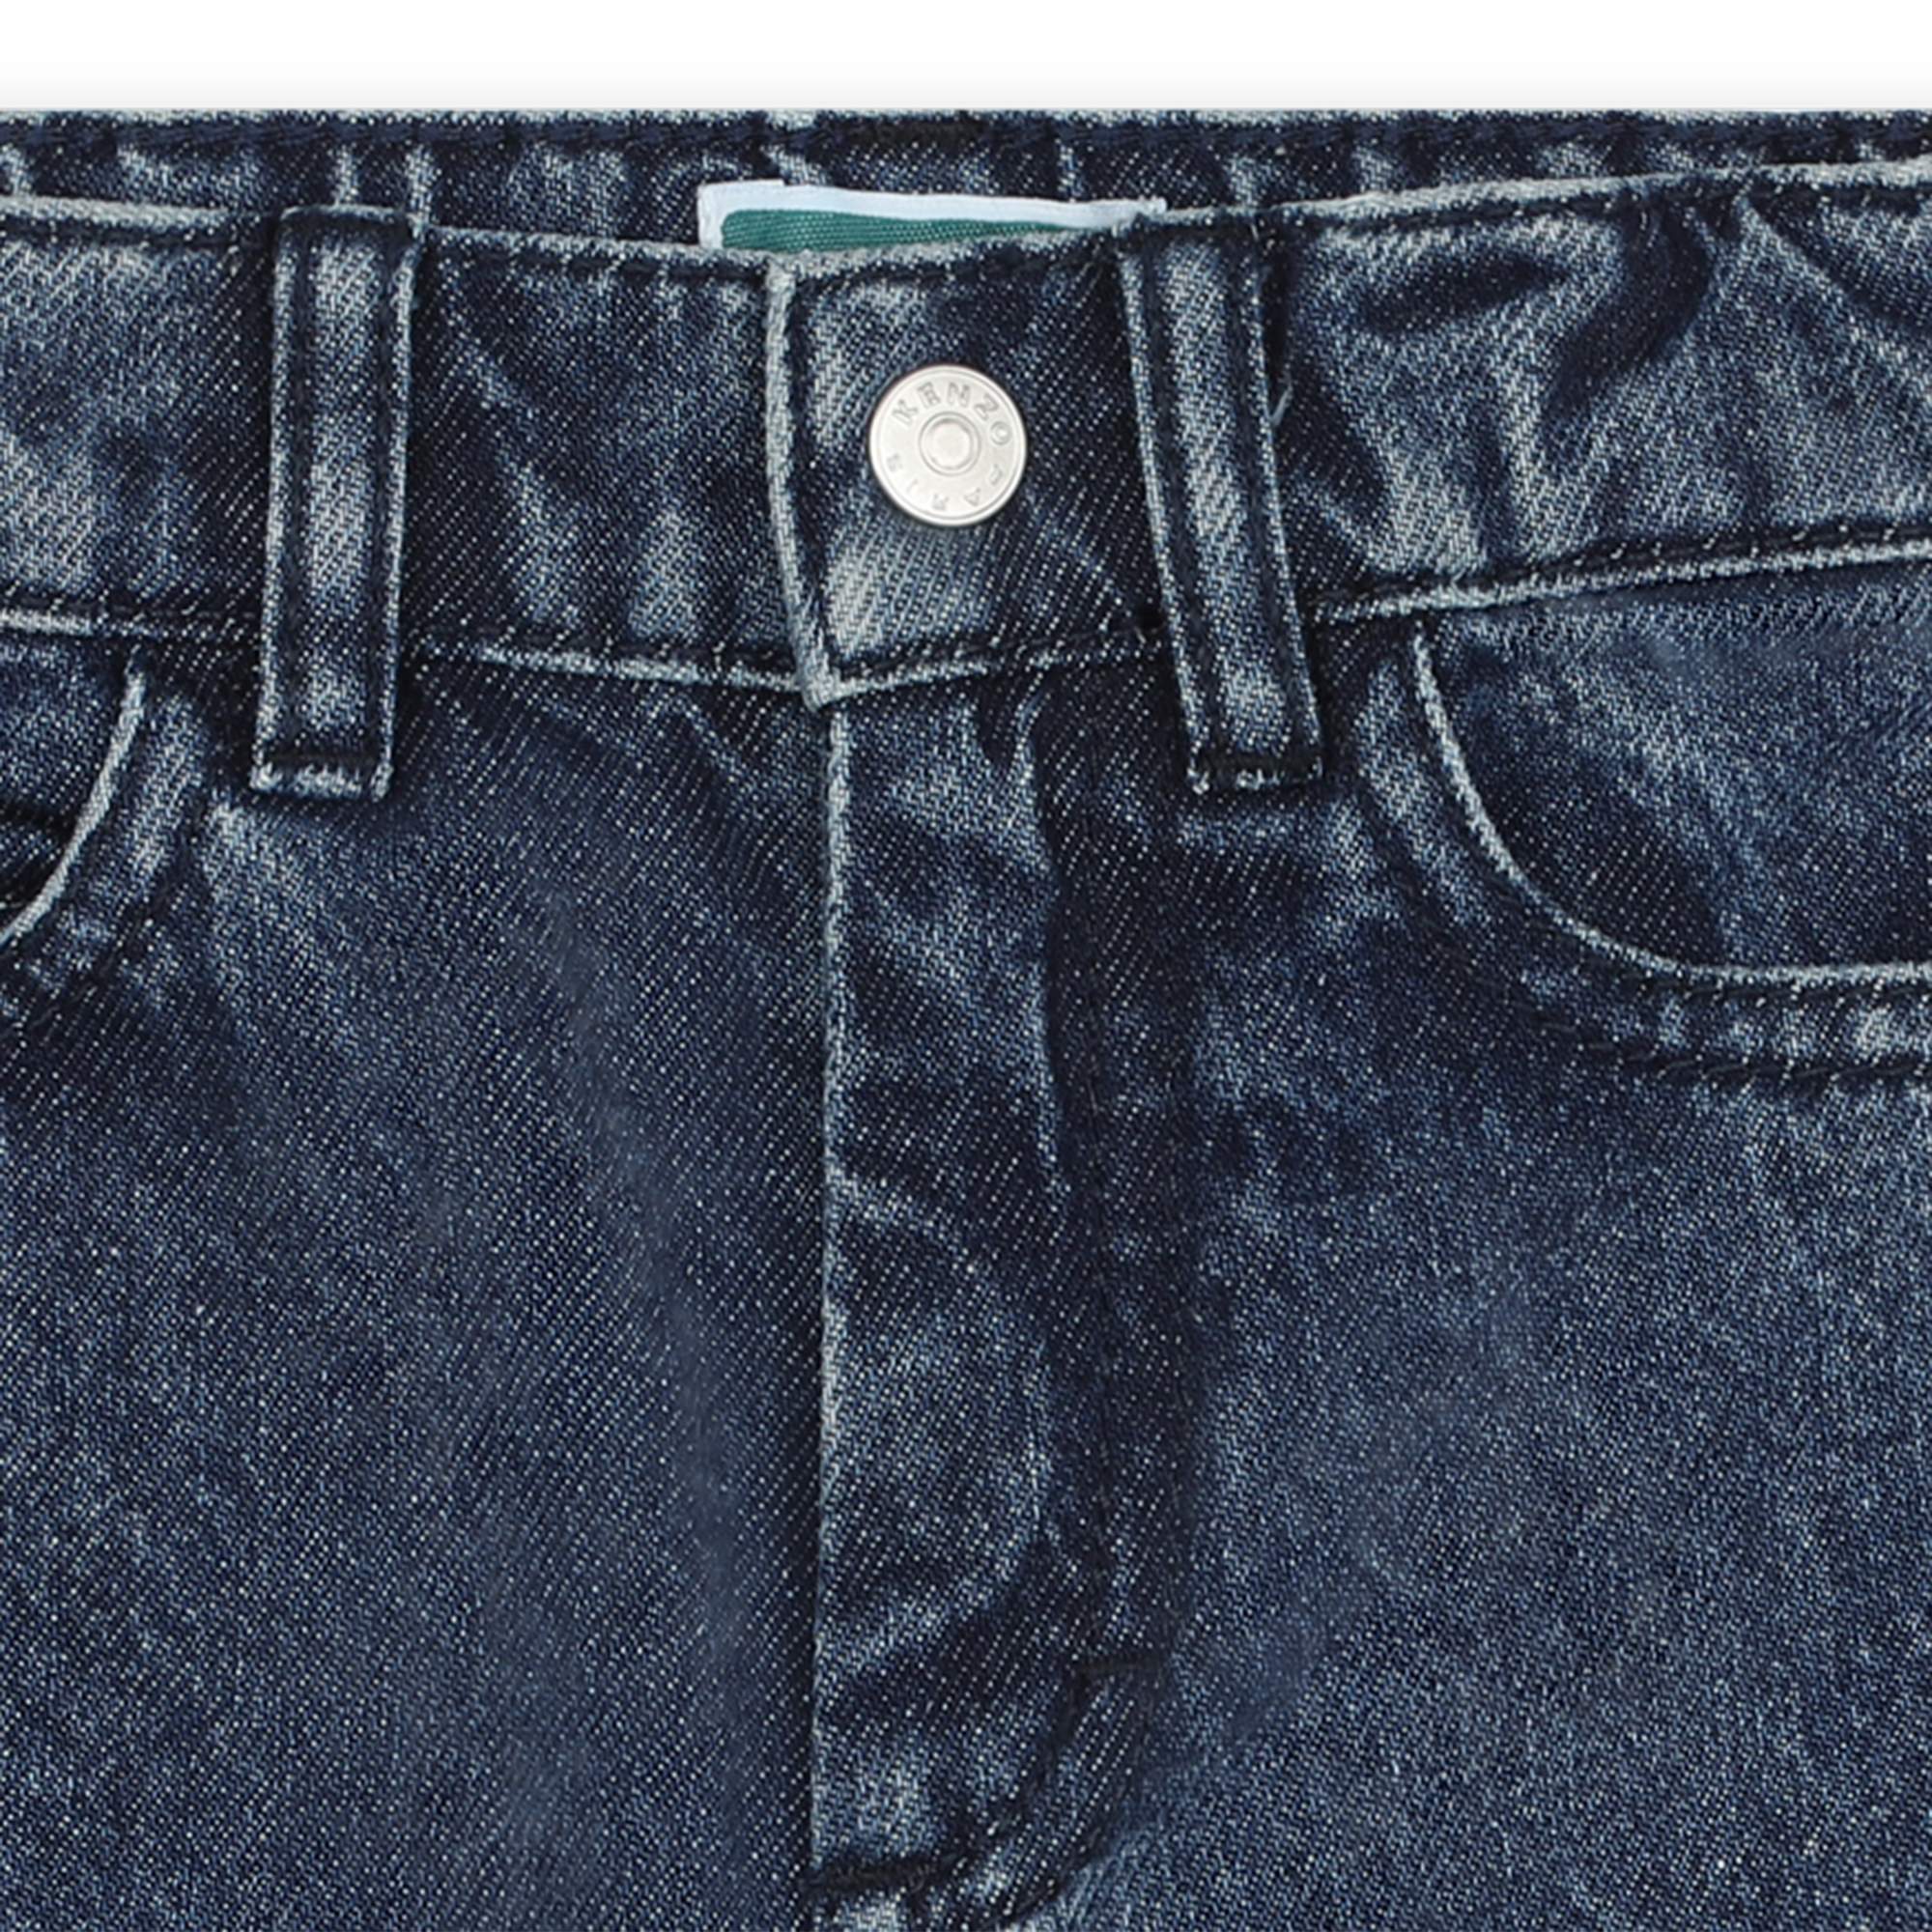 Baumwoll-Jeans mit Aufnäher KENZO KIDS Für JUNGE